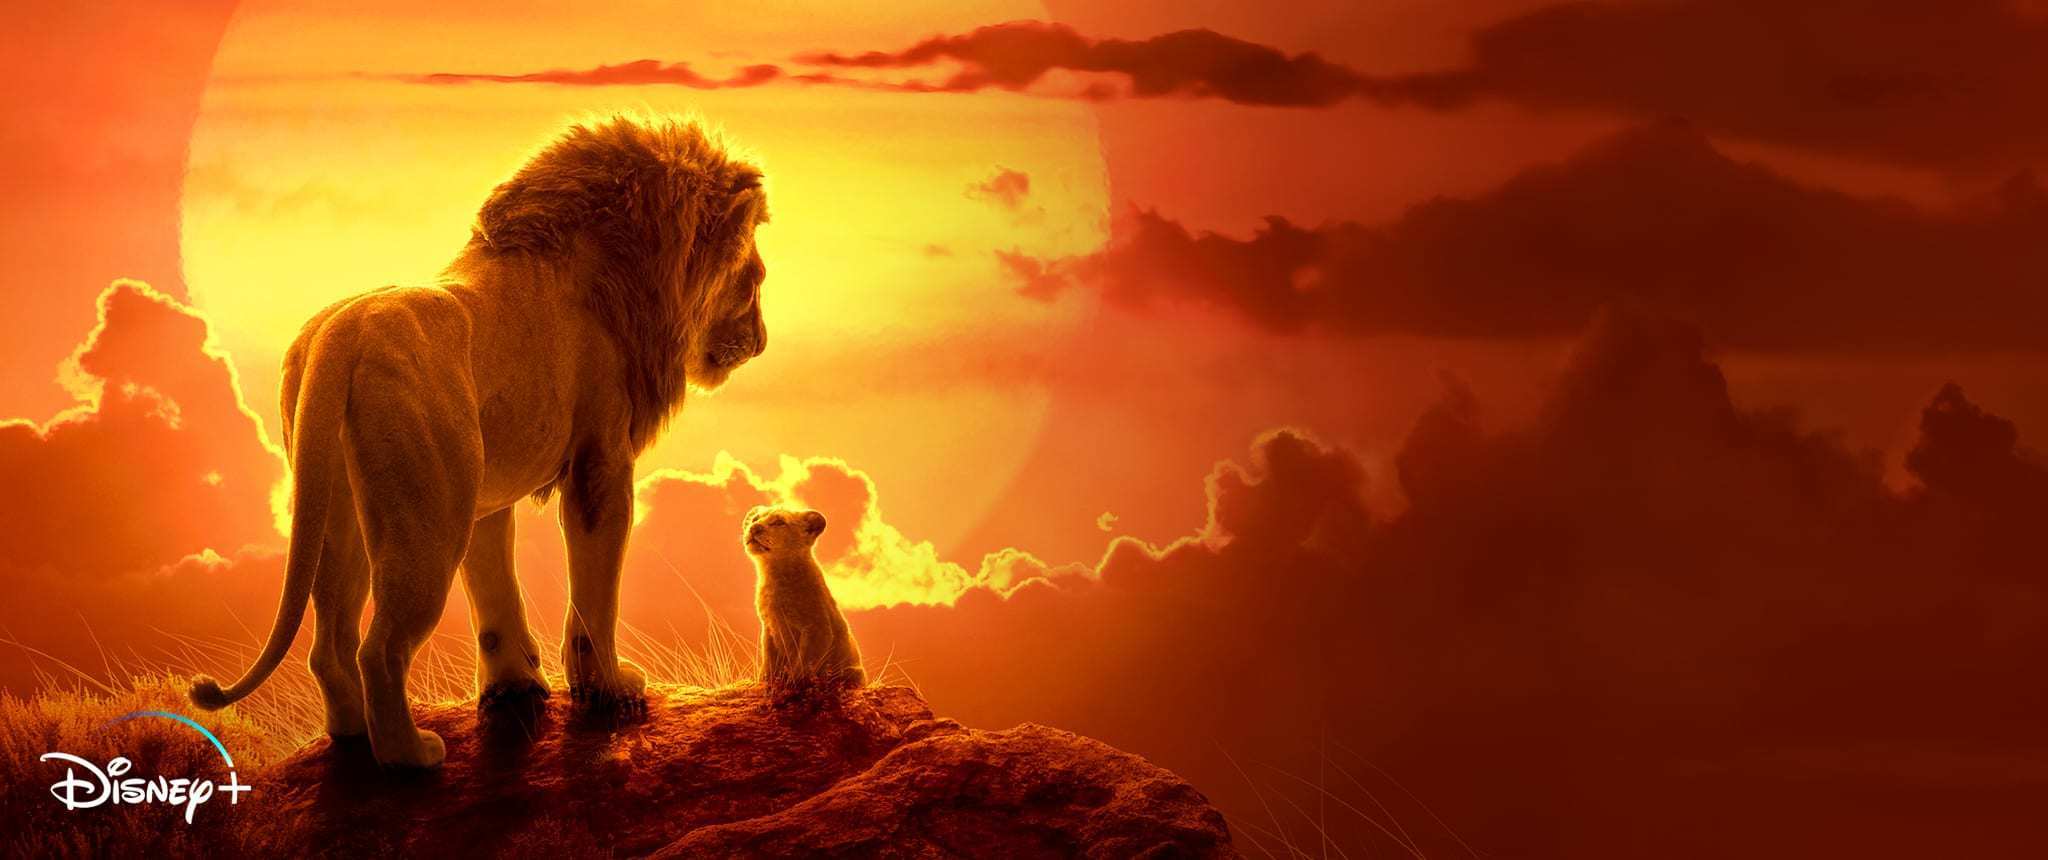 Le Roi Lion est maintenant disponible sur Disney+